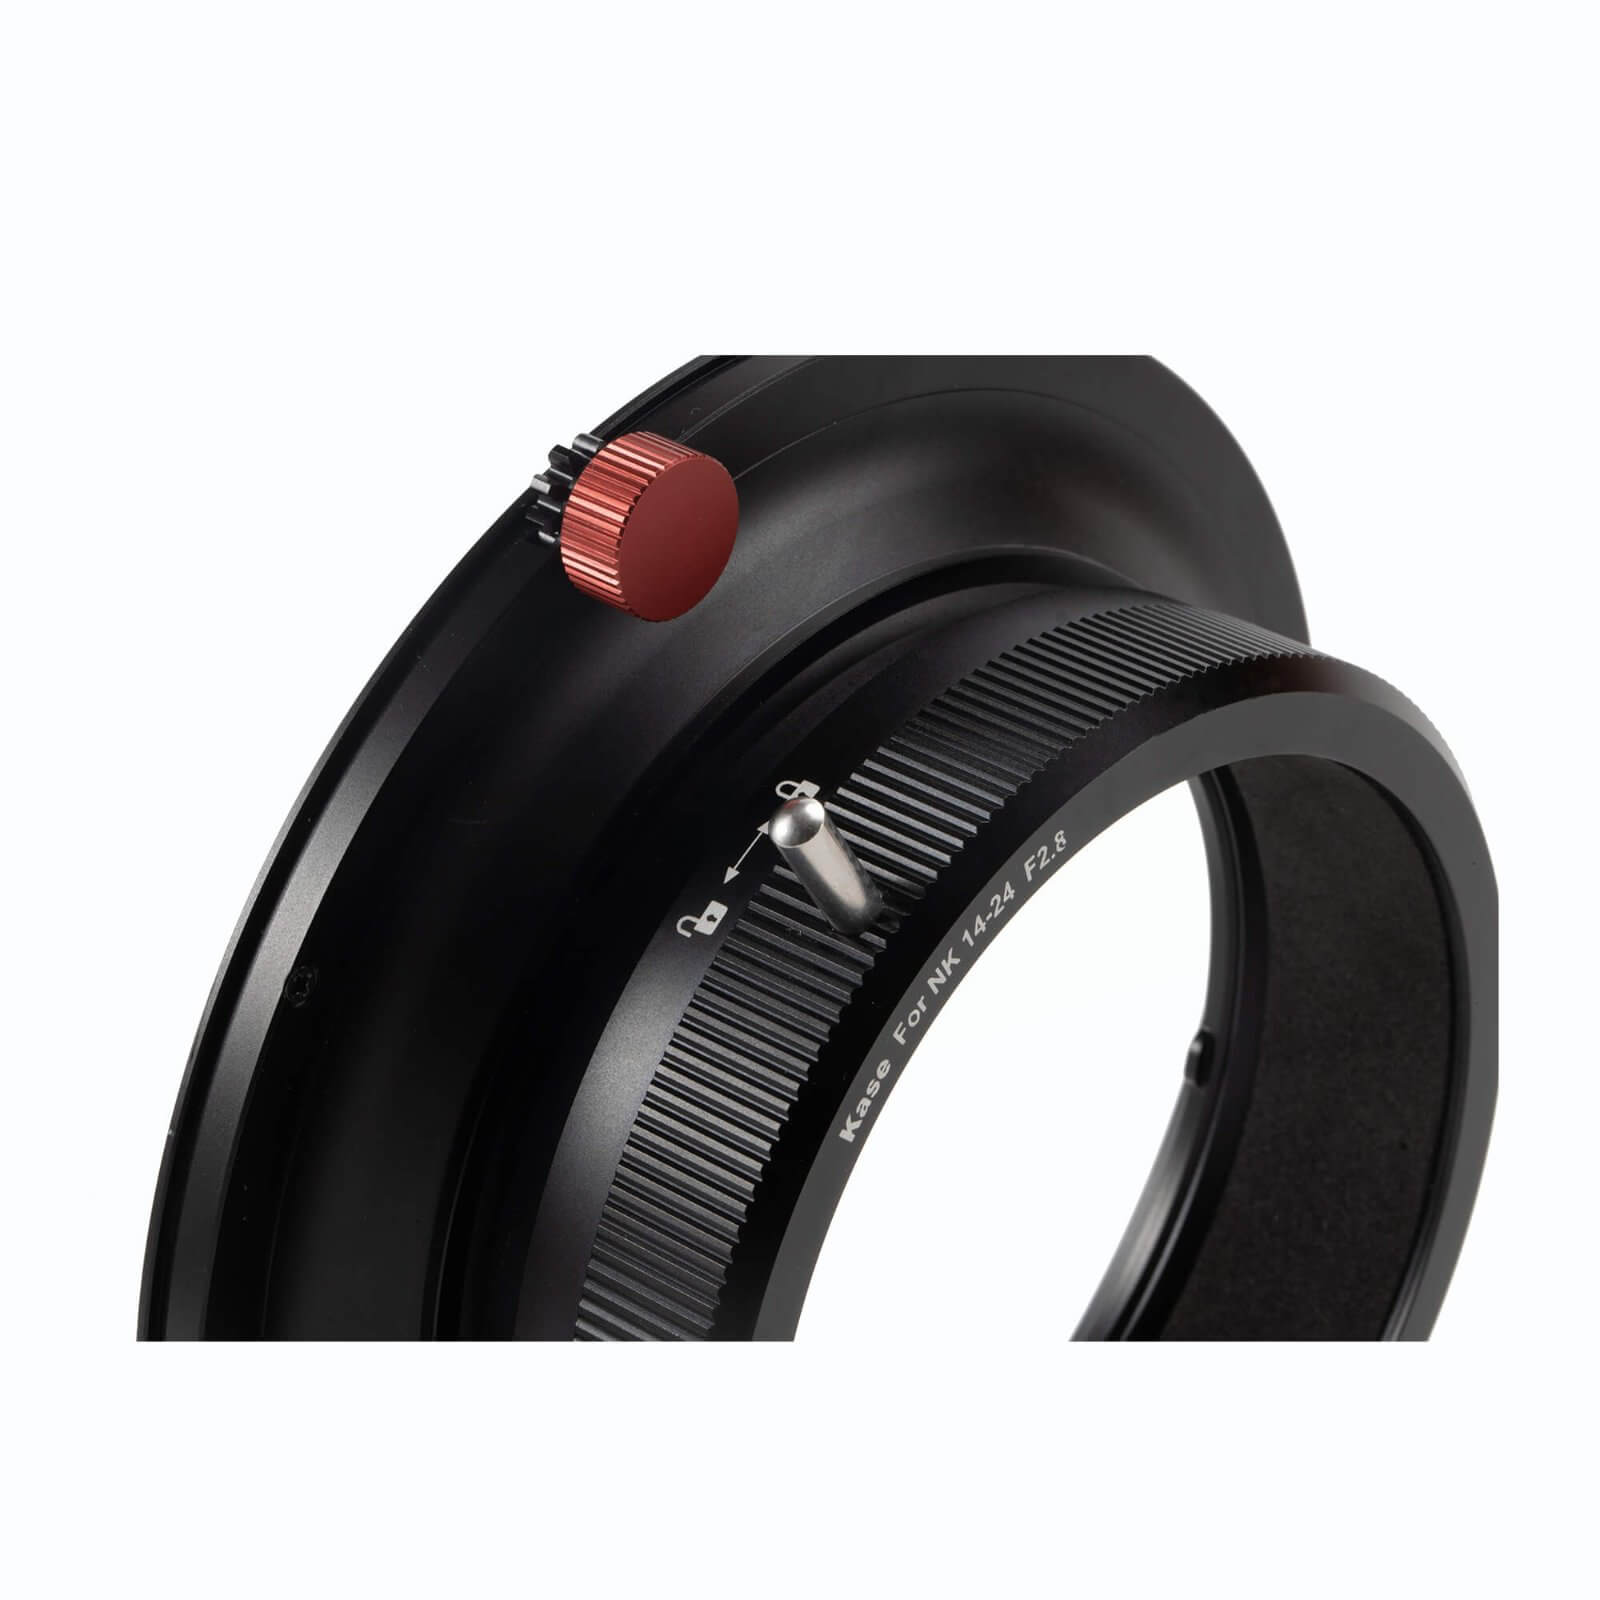 K150 Adapter Ring for Nikon 14-24mm Lens